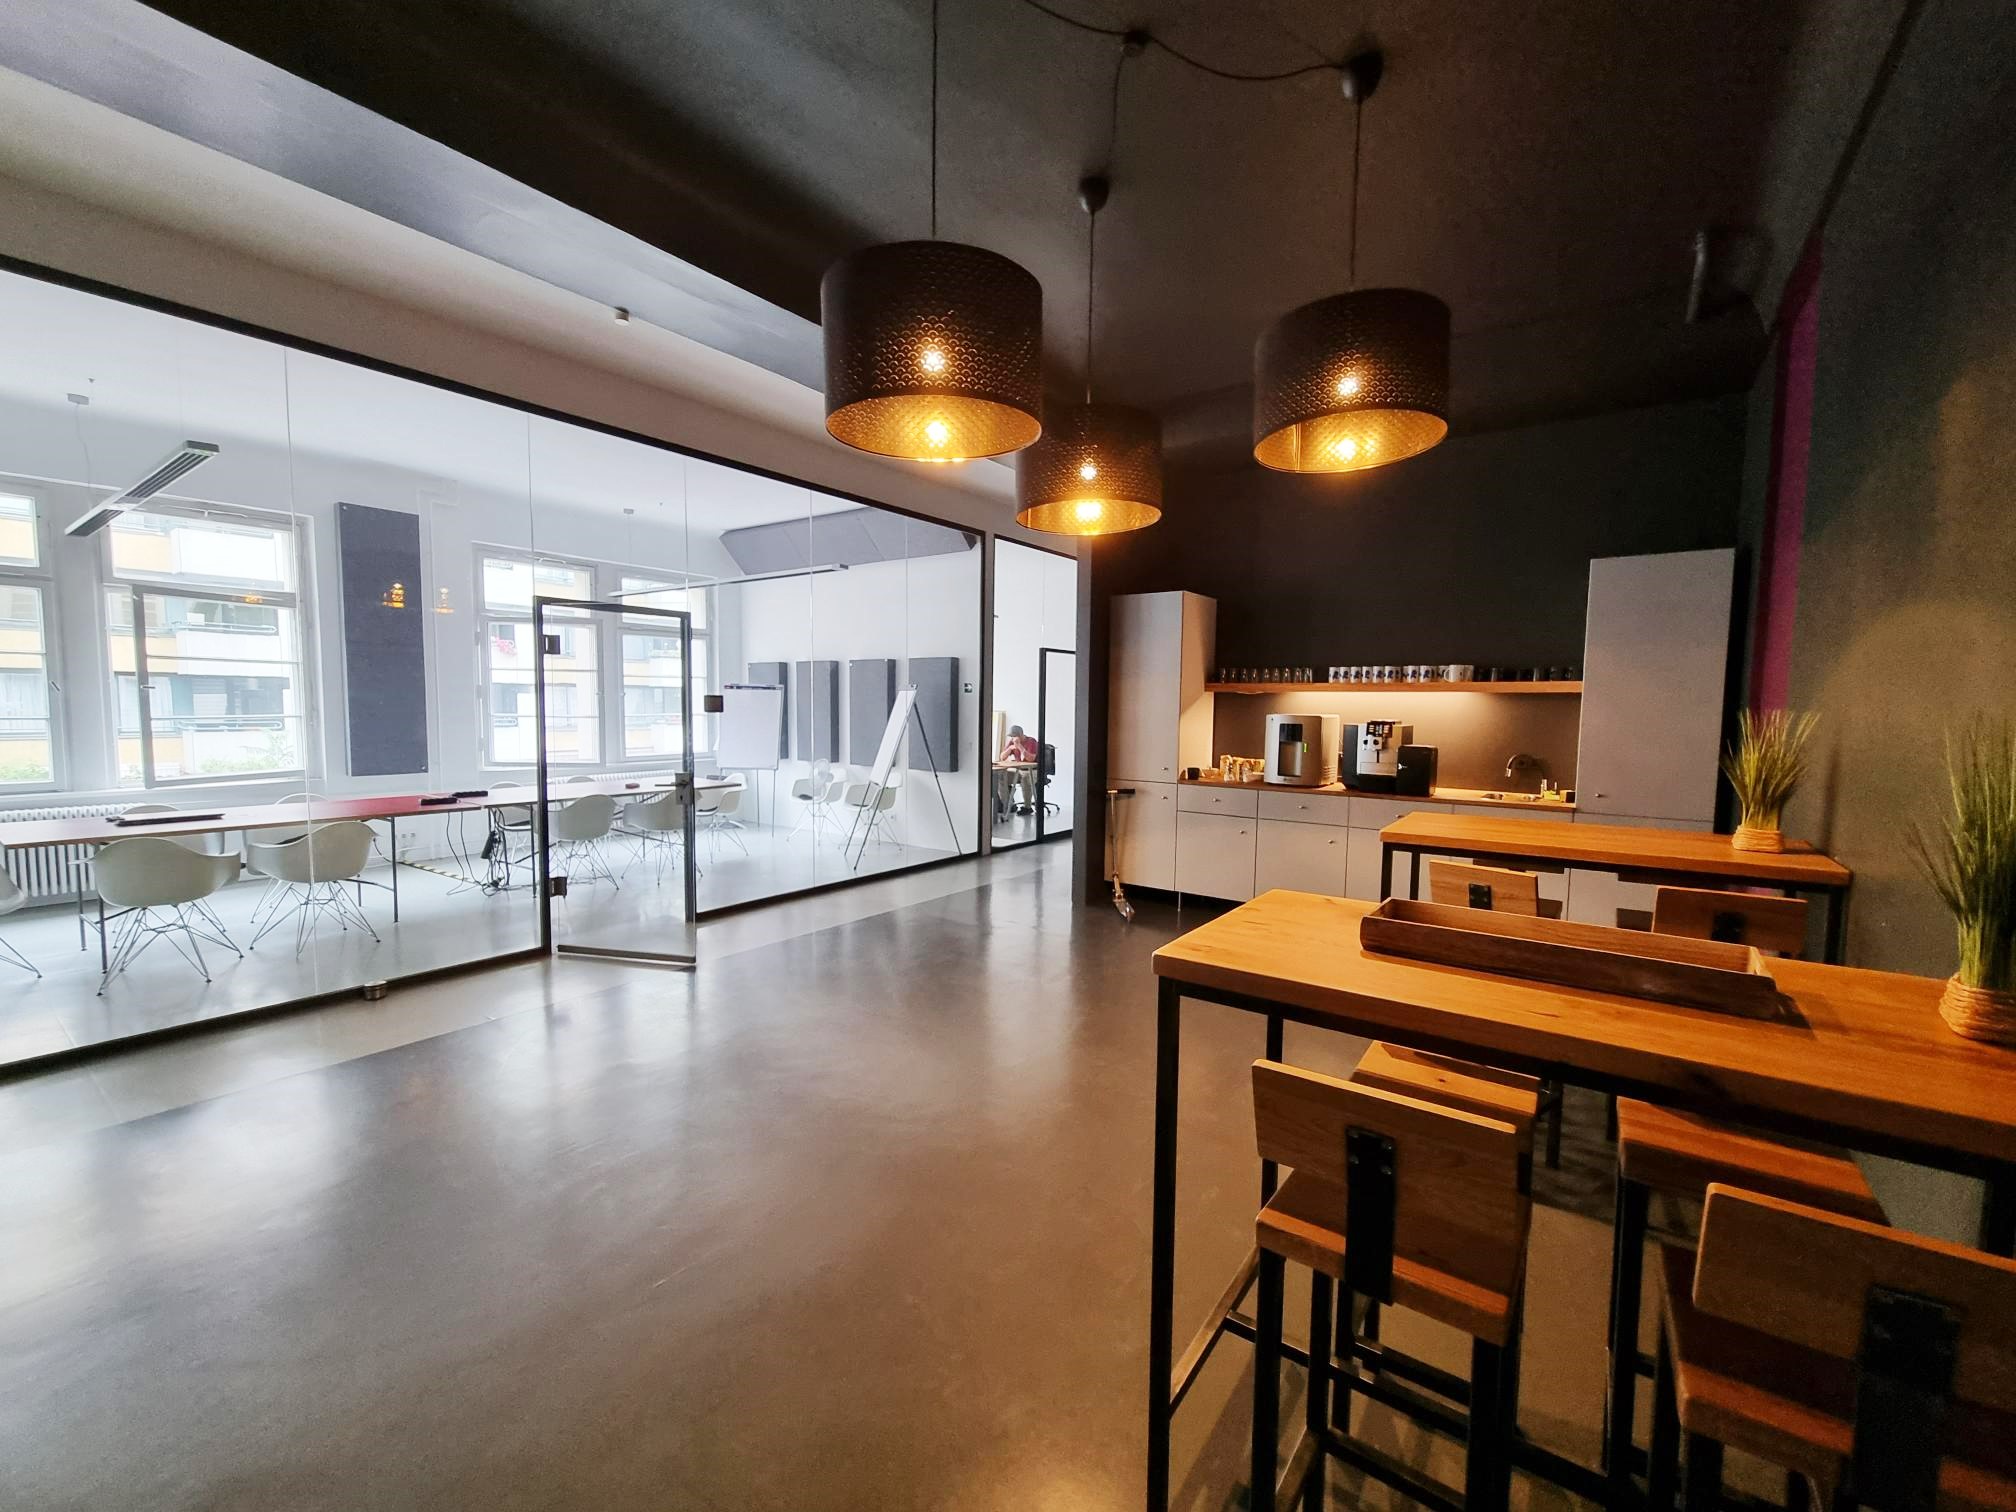 Auf der linken Seite ein großer gläserner Besprechungsraum, auf der rechten Seite davor eine Küche im Industriestil